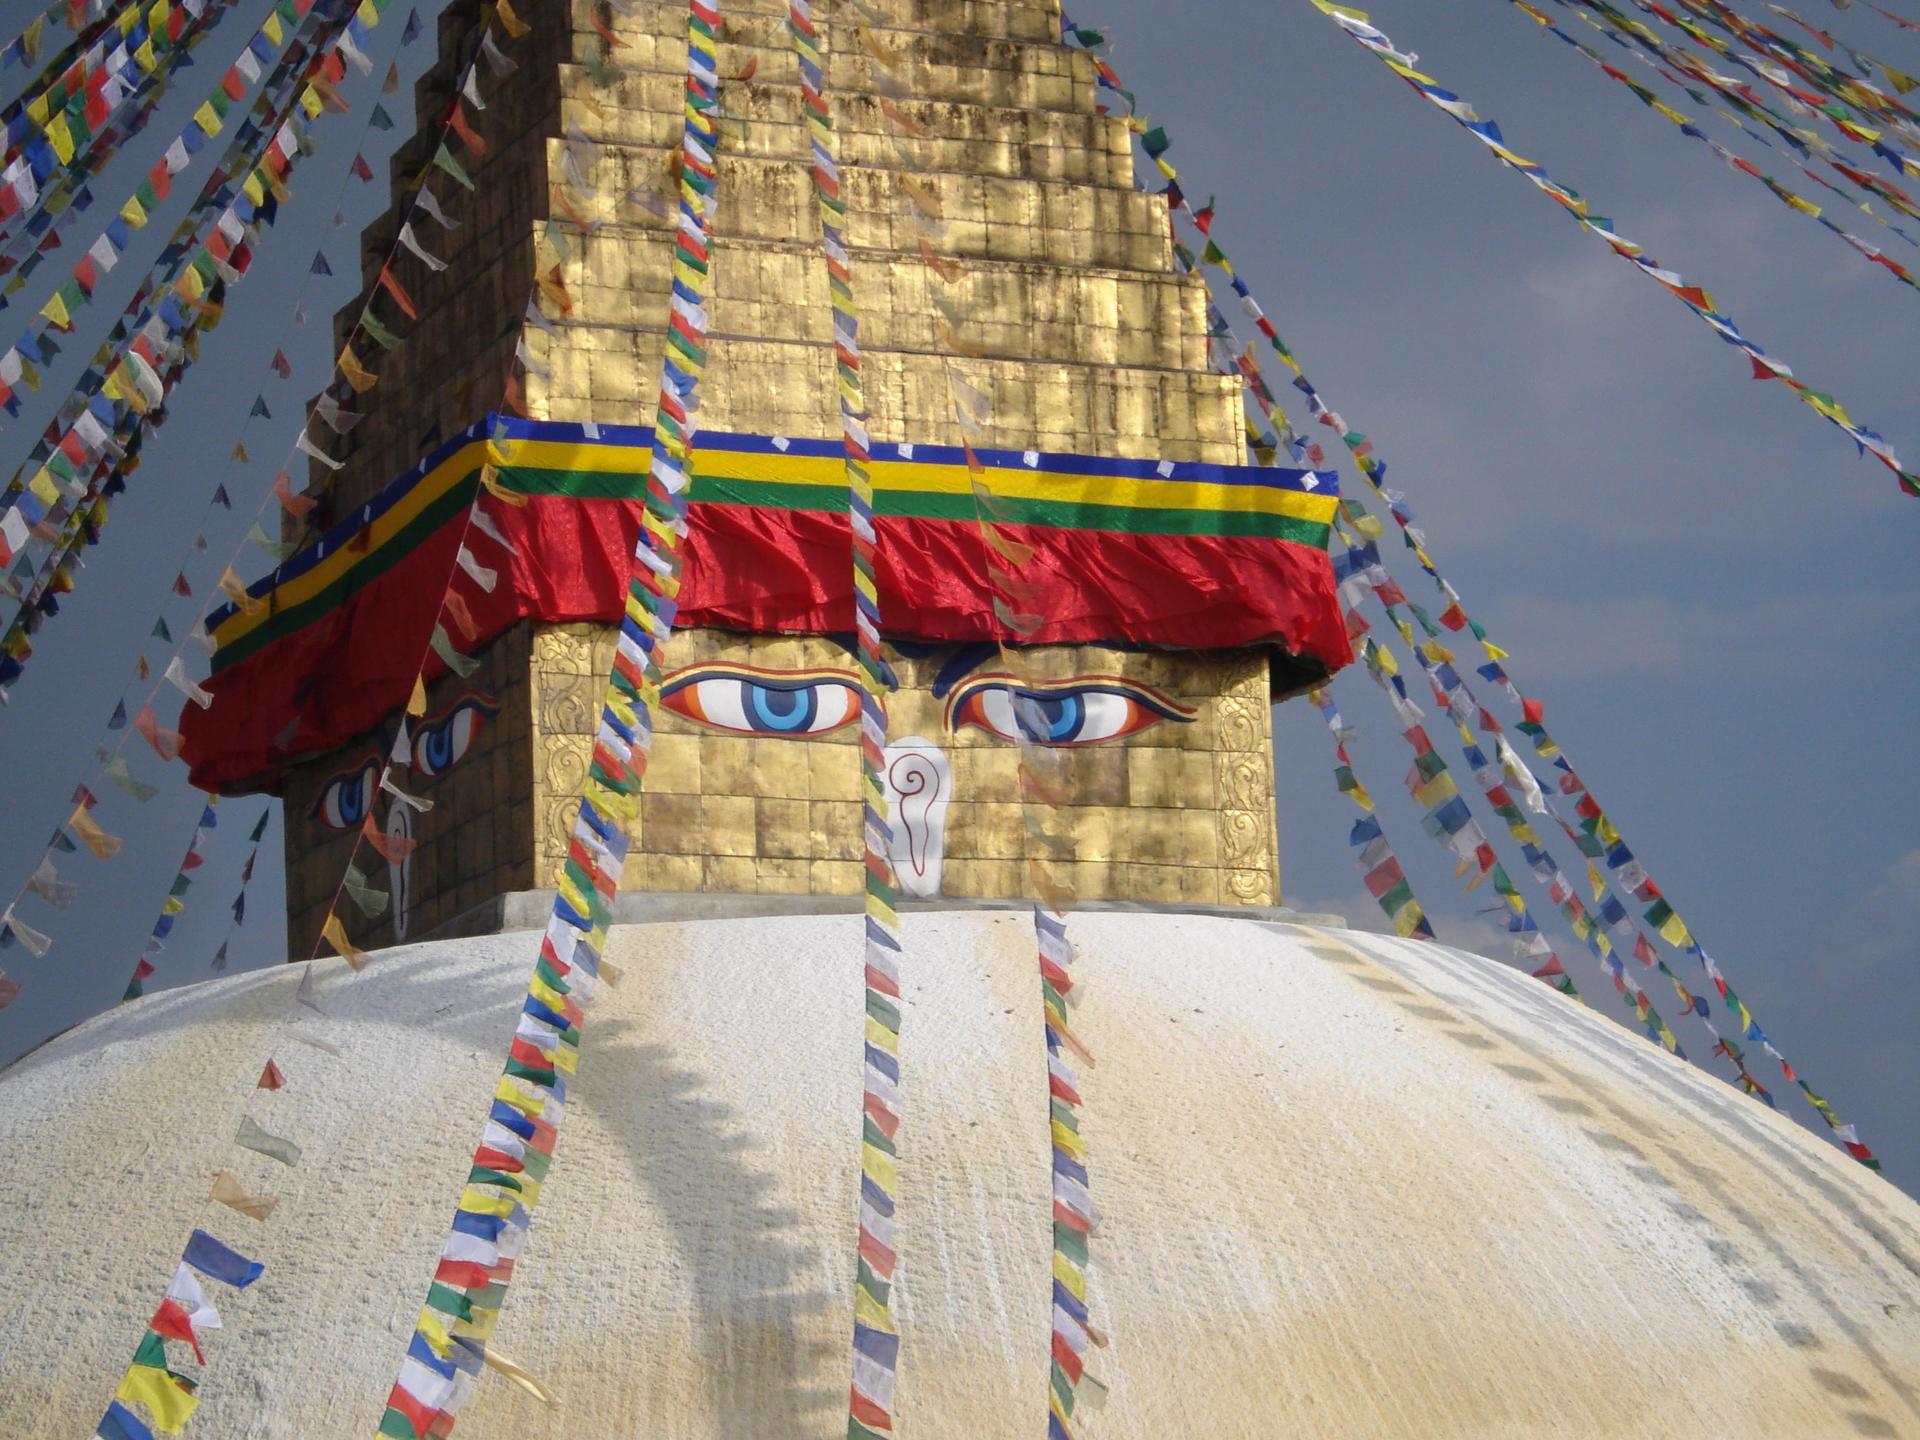 Bemalter Tempel mit Girlanden auf einer Anhöhe in Nepal